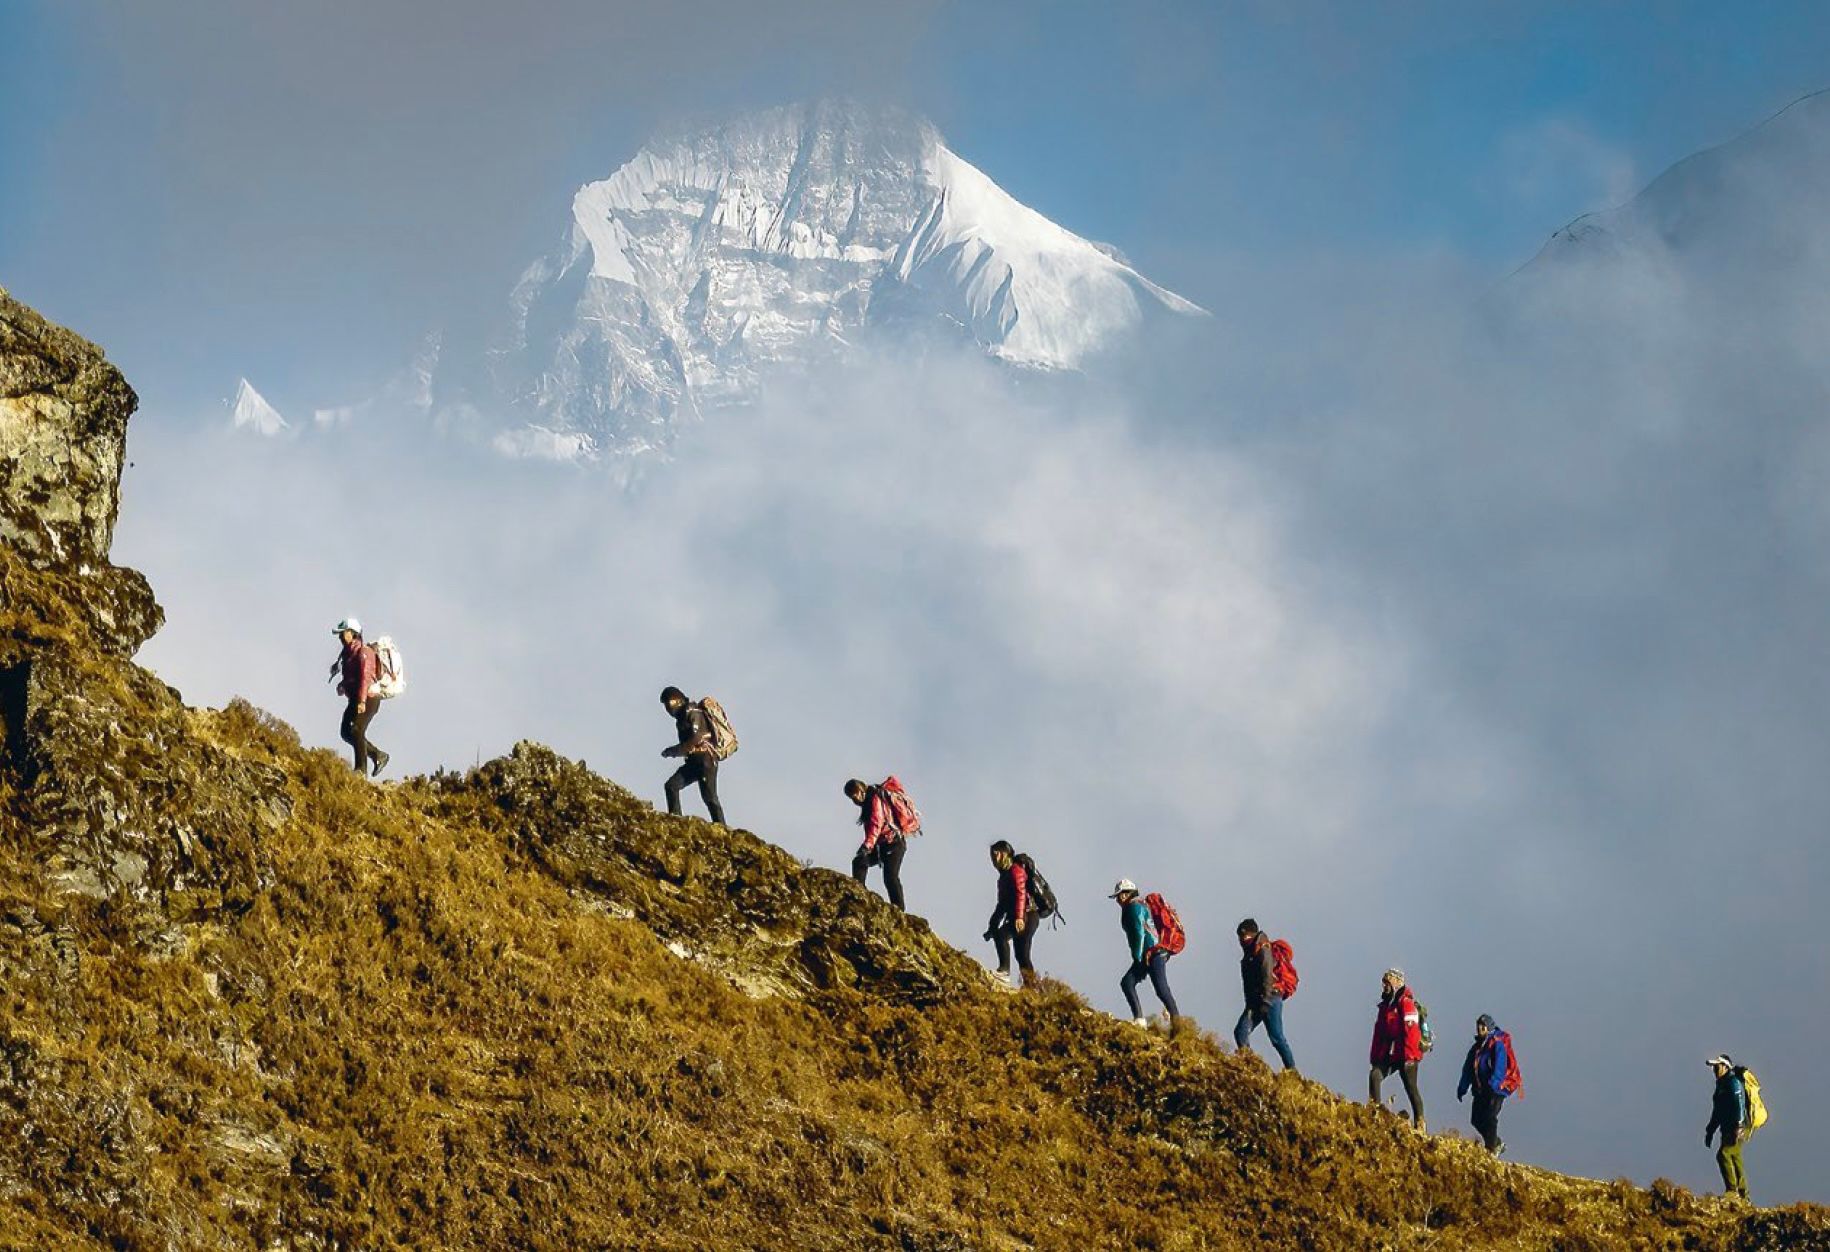 Dawa Yangzum Sherpa（左）正带领一群年轻女性登上山脊，白色的山峰为这些有抱负的登山者营造了鼓舞人心的背景。